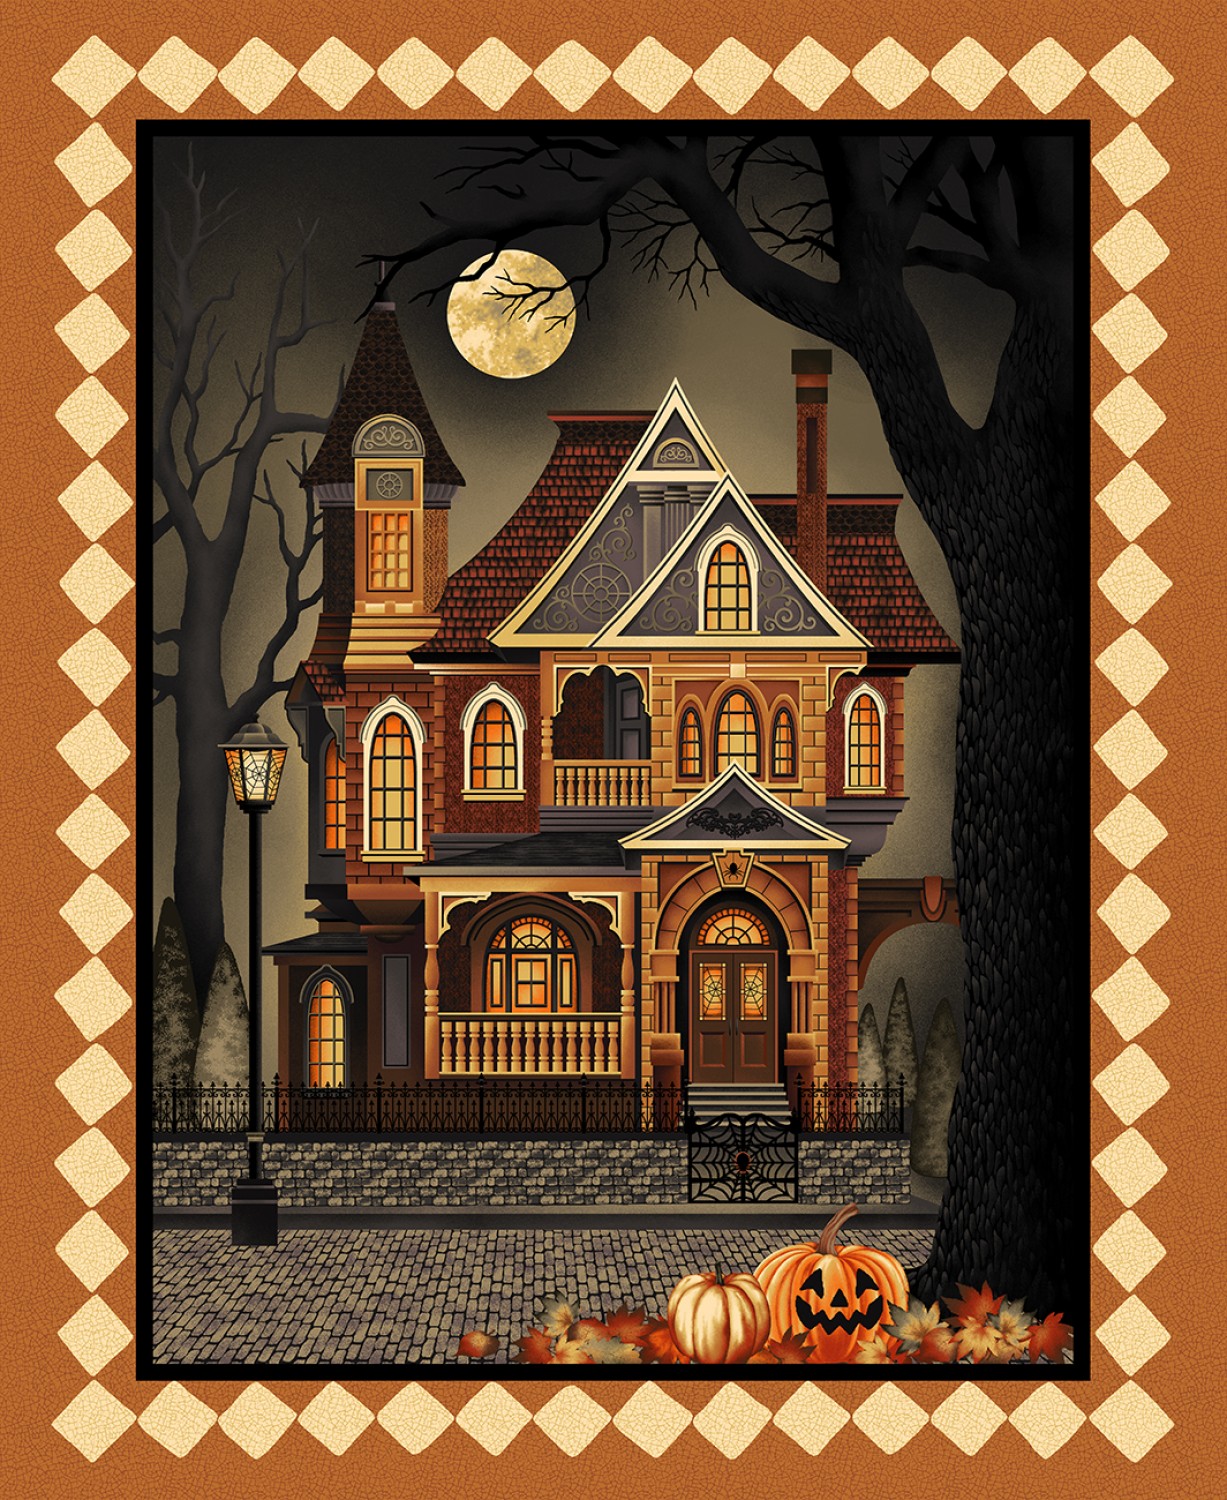 Haunted Village - Patchworkstoffe für Halloween